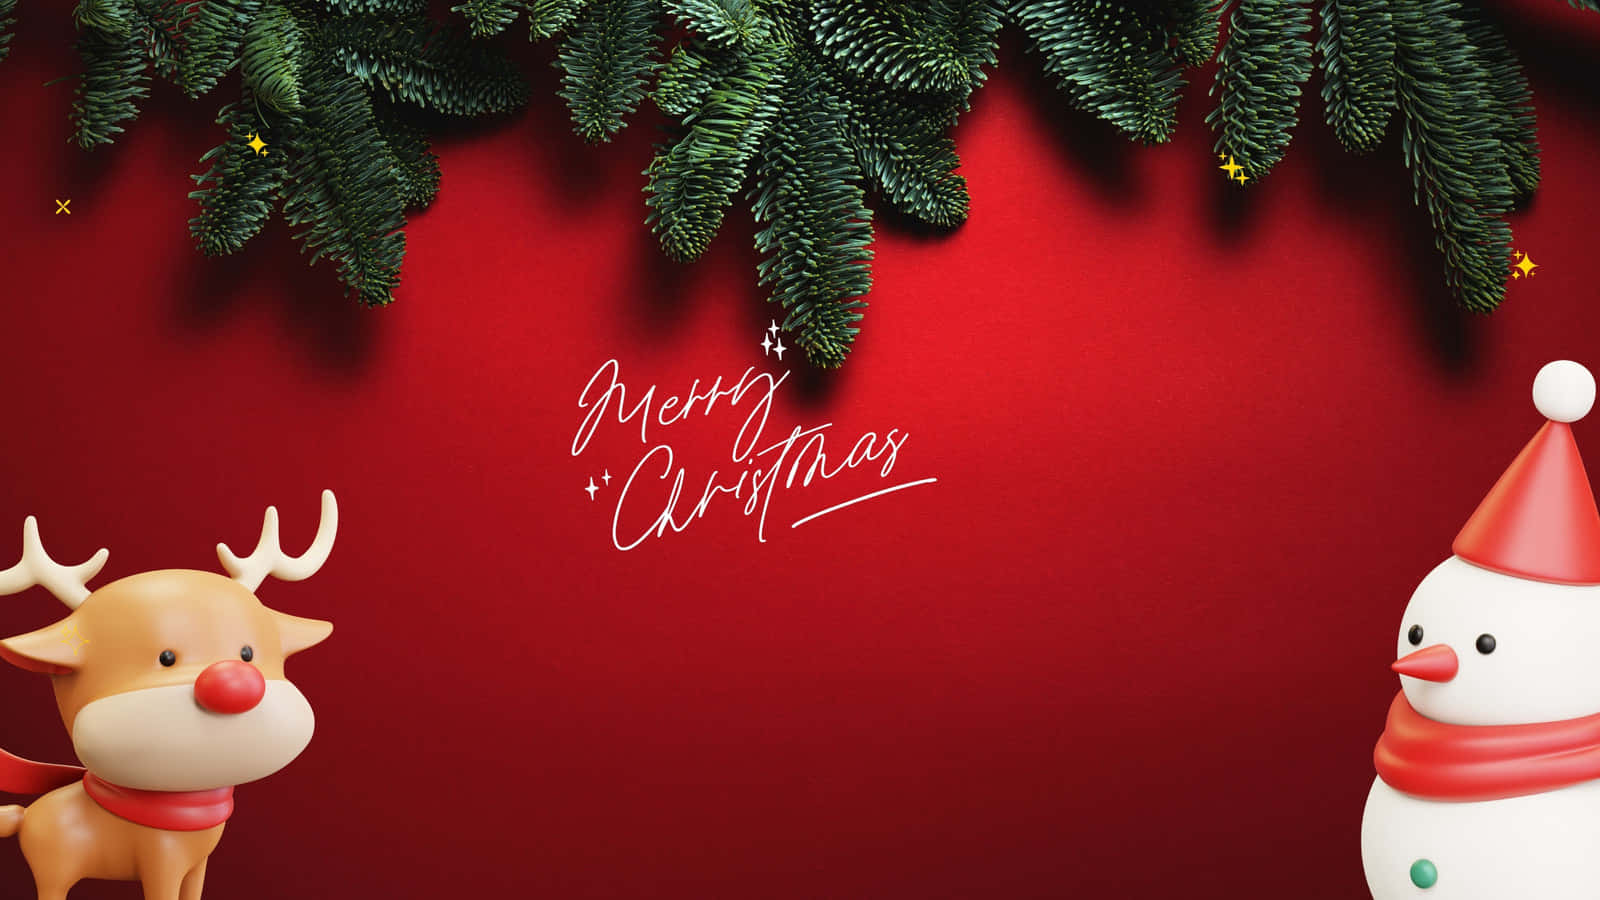 Feiernsie Die Feiertagssaison Mit Einem Weihnachts-desktop-hintergrundbild.